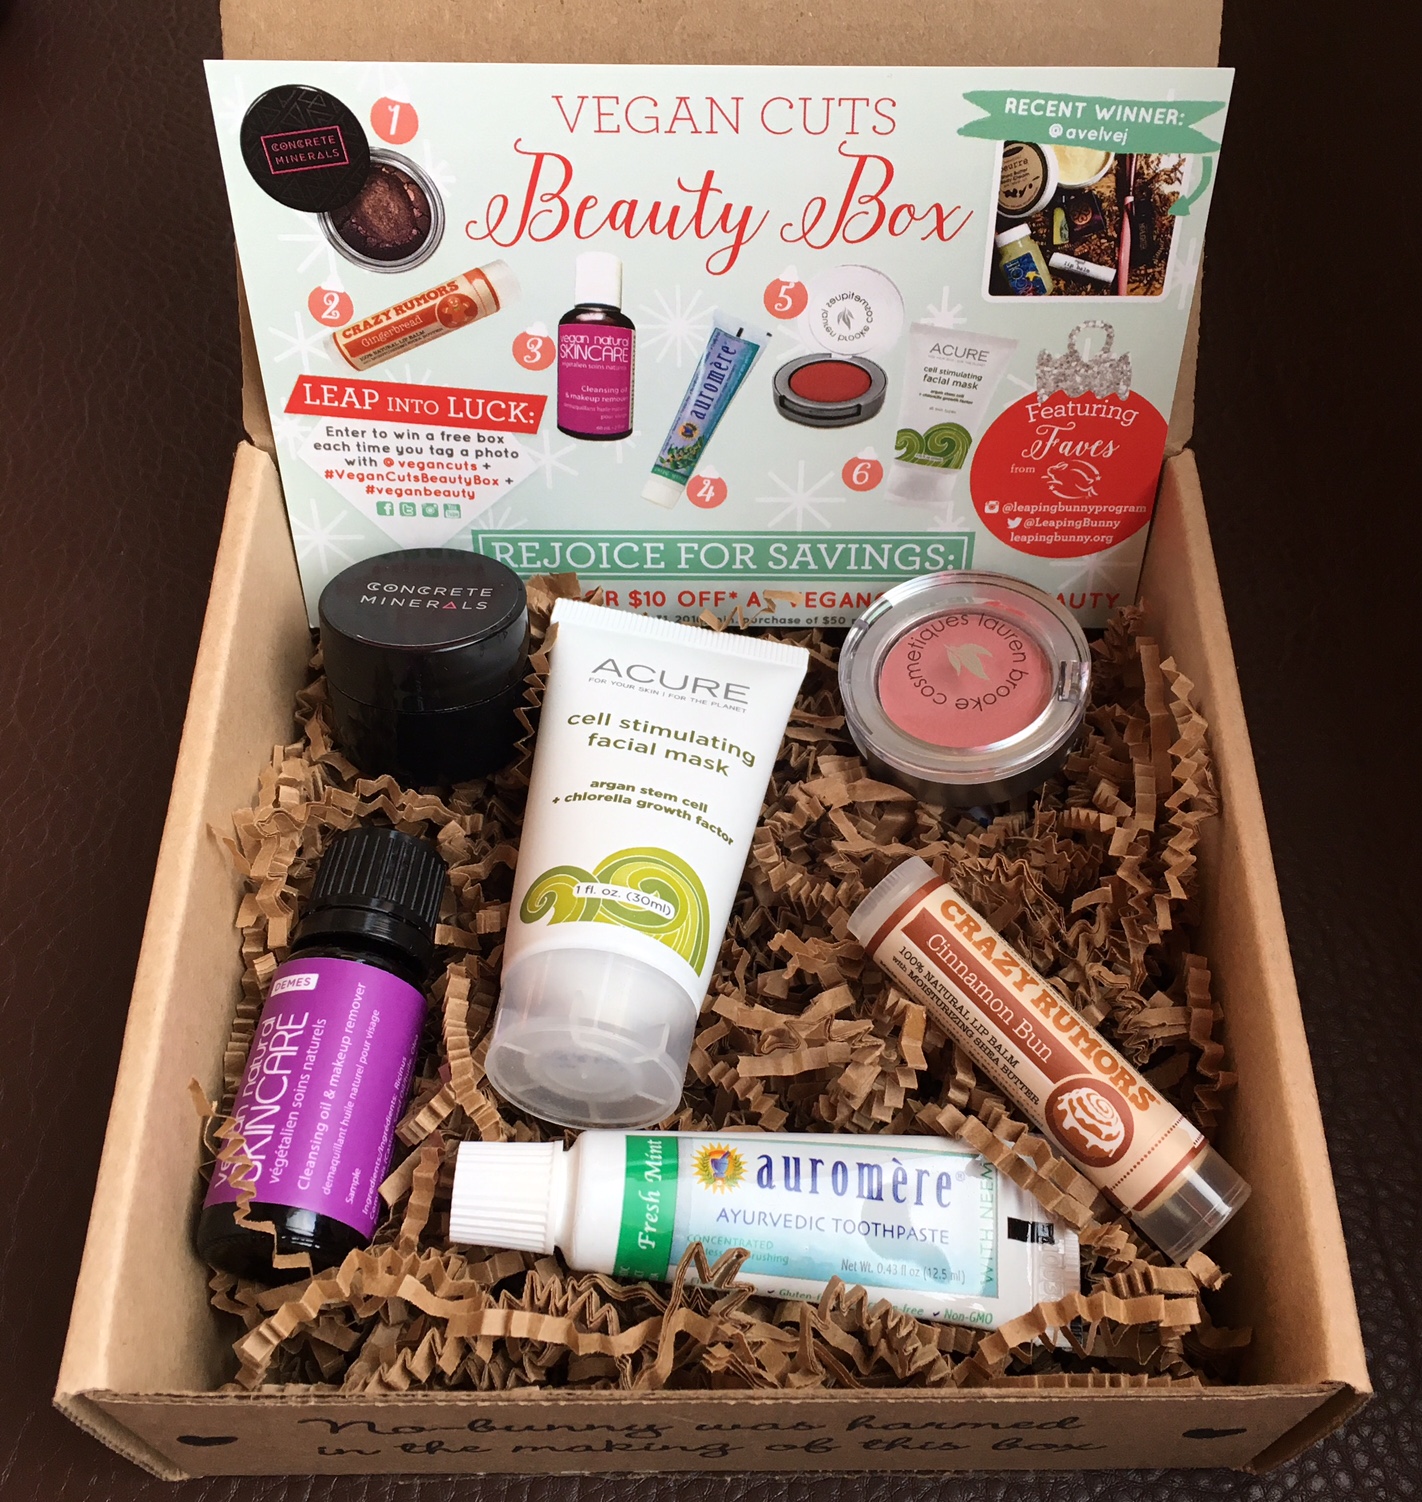 December 2015 Vegan Cuts beauty box